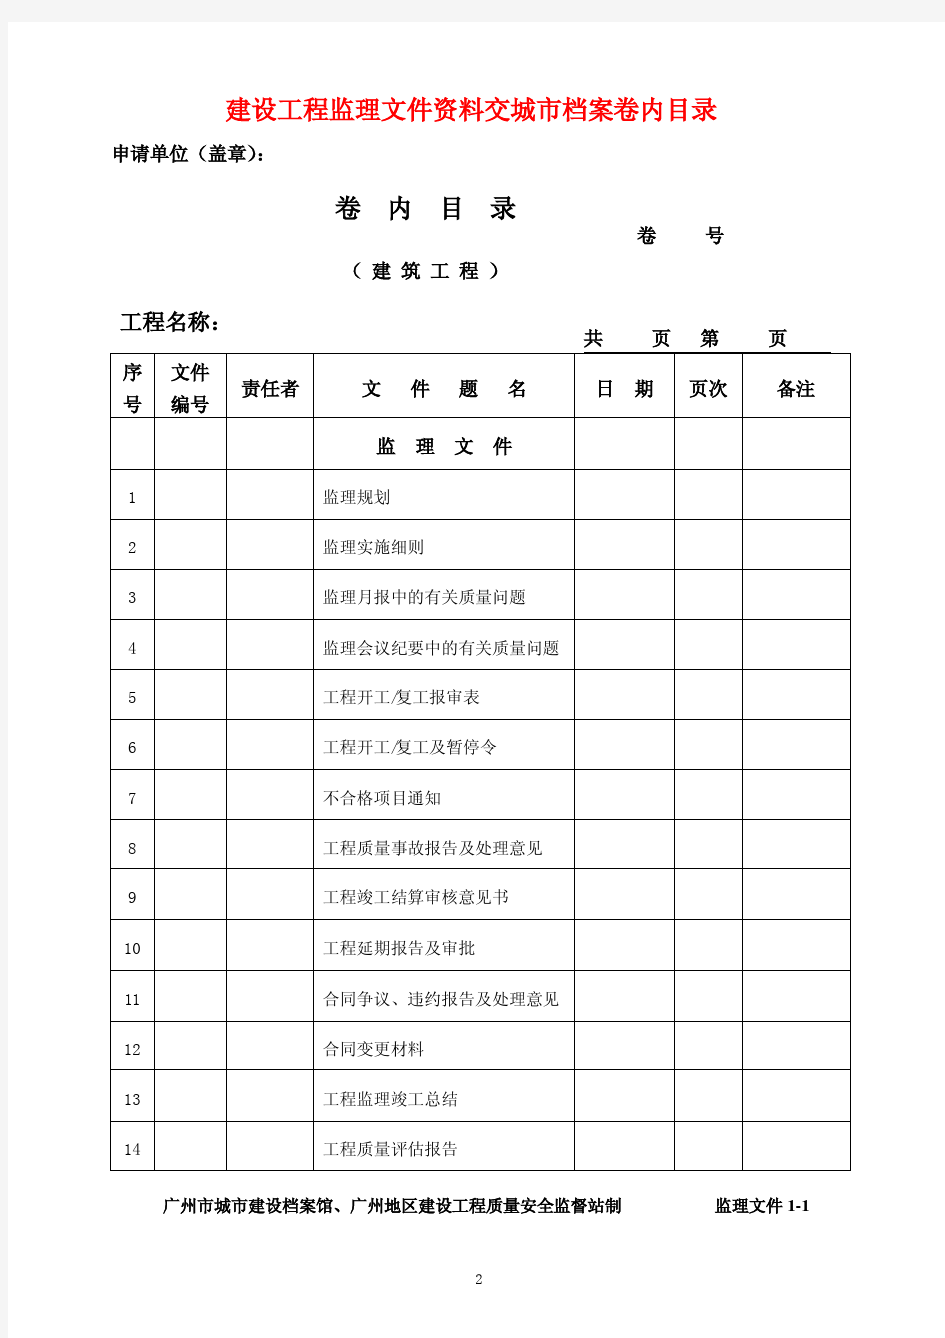 01-广州市建设工程技术资料及档案编制指南